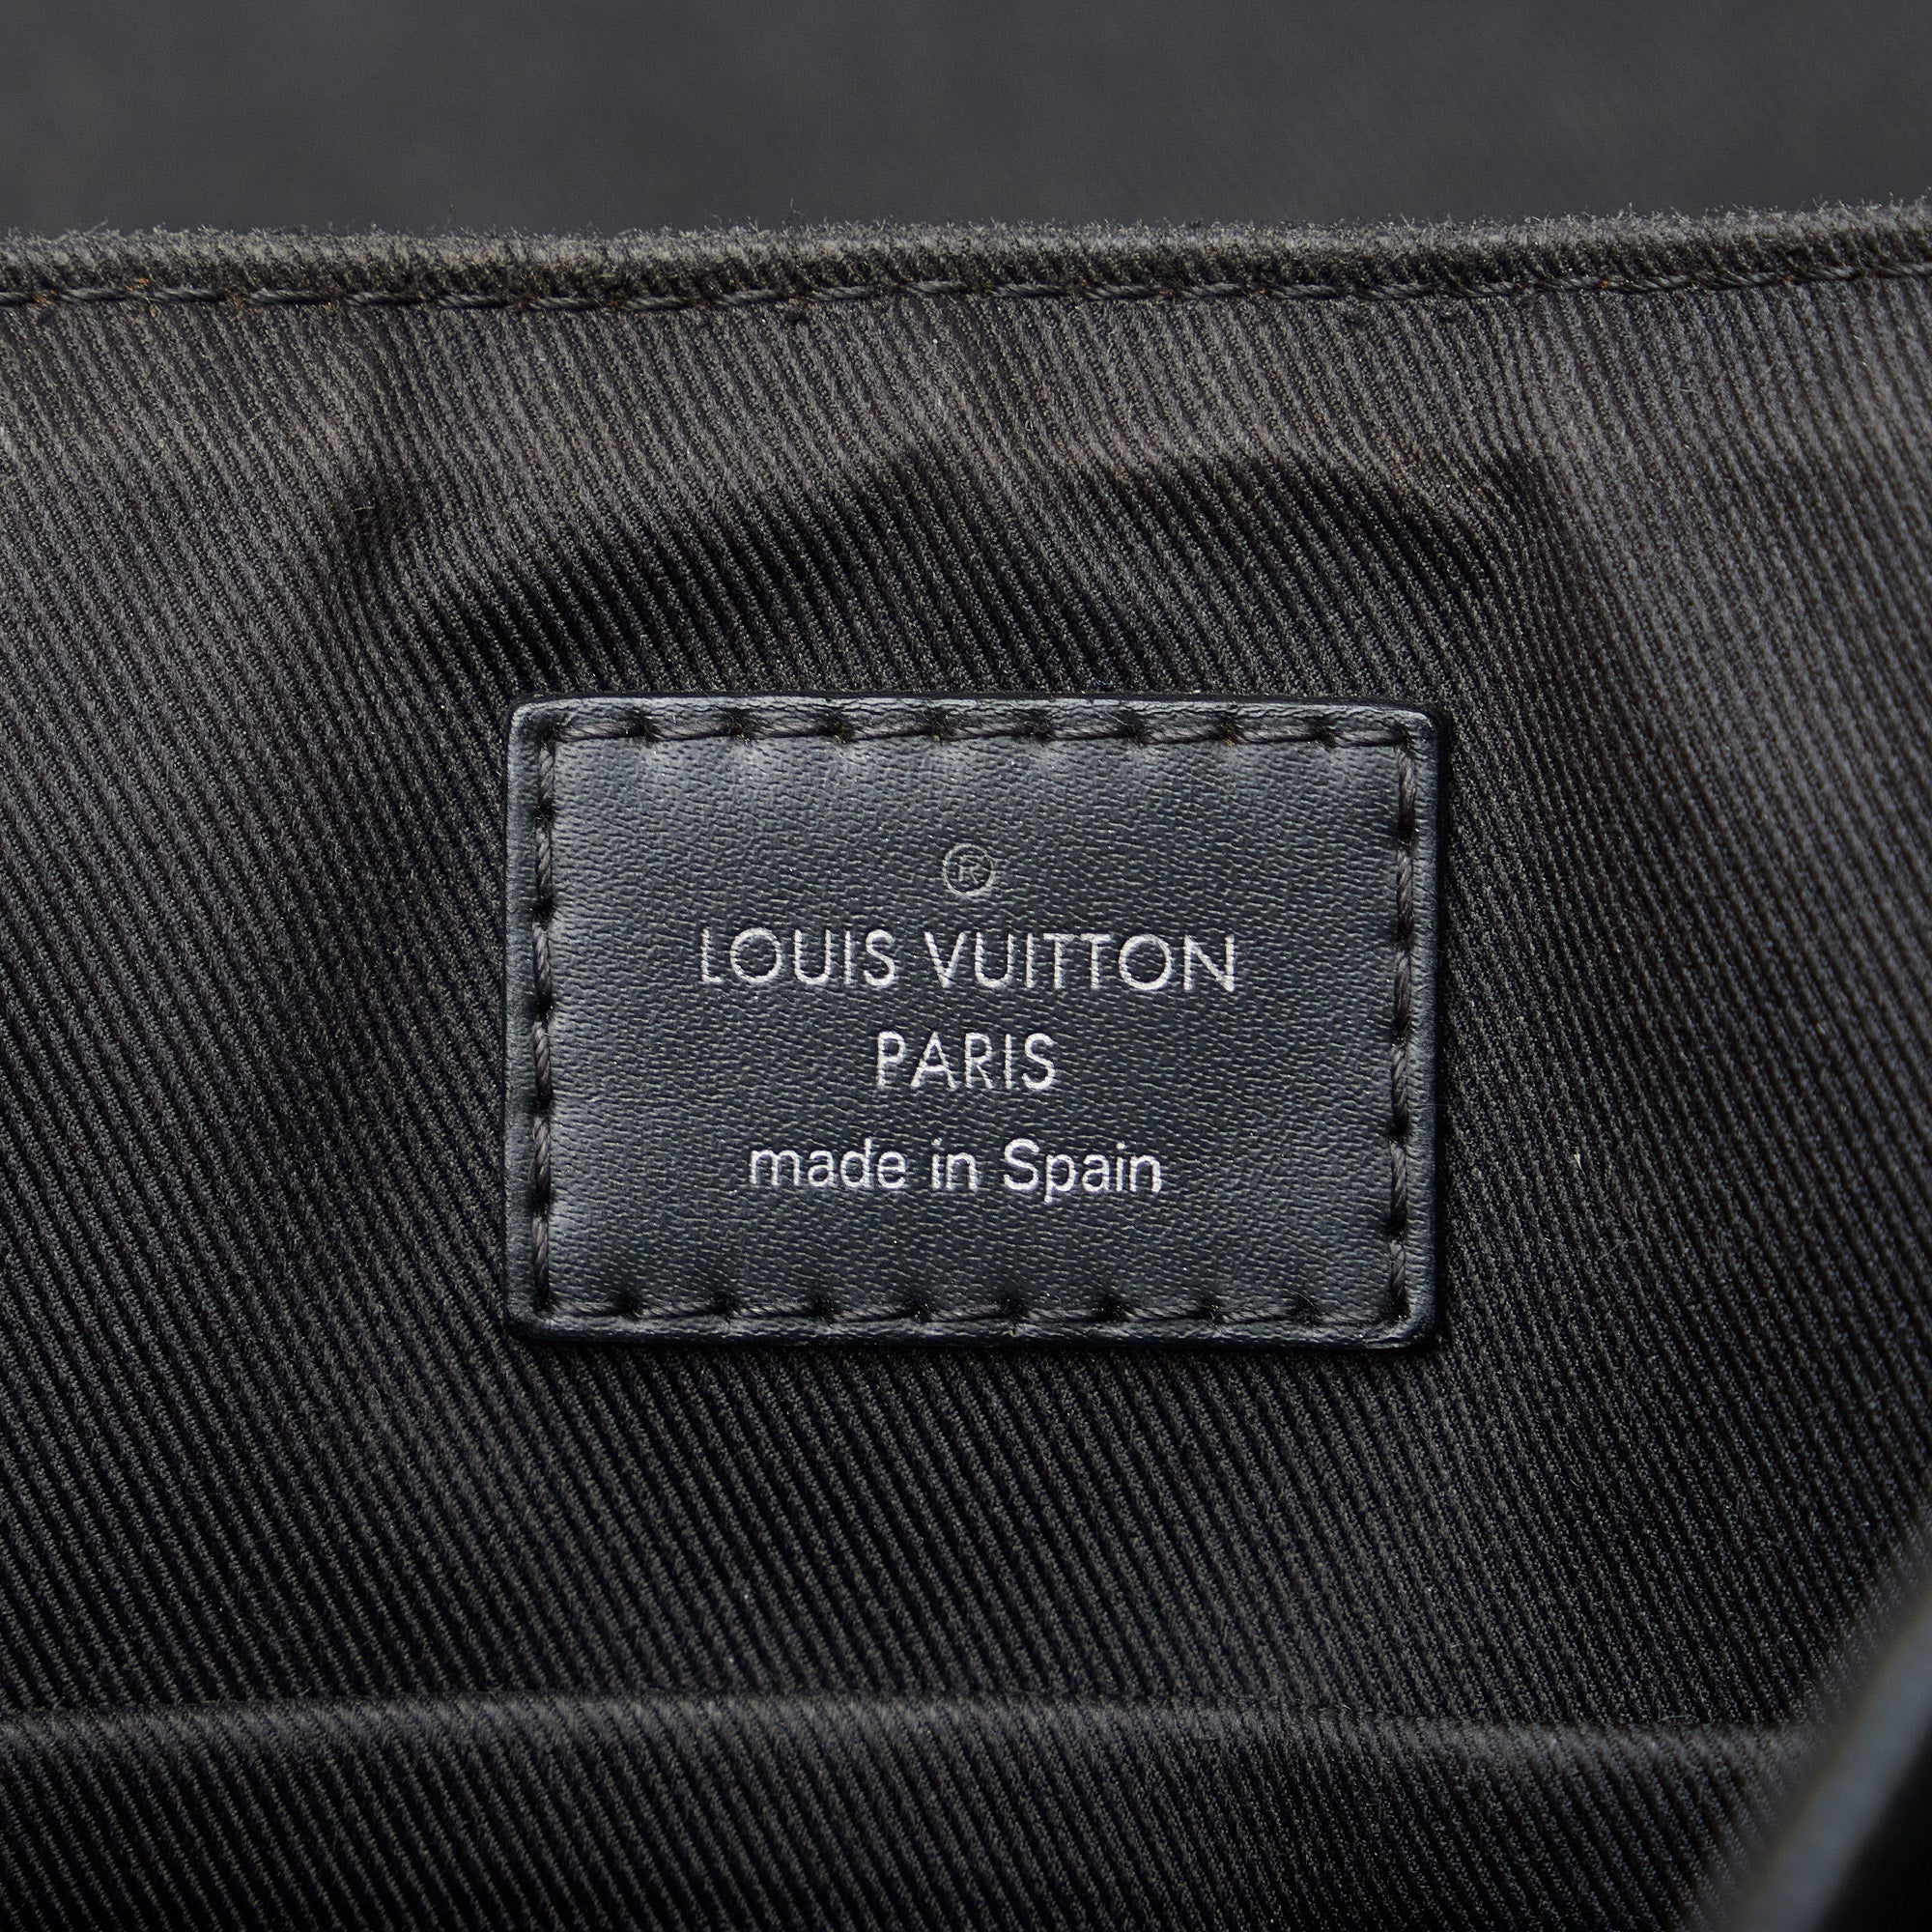 Louis Vuitton Damier Graphite District PM - Black Satchels, Bags -  LOU736788